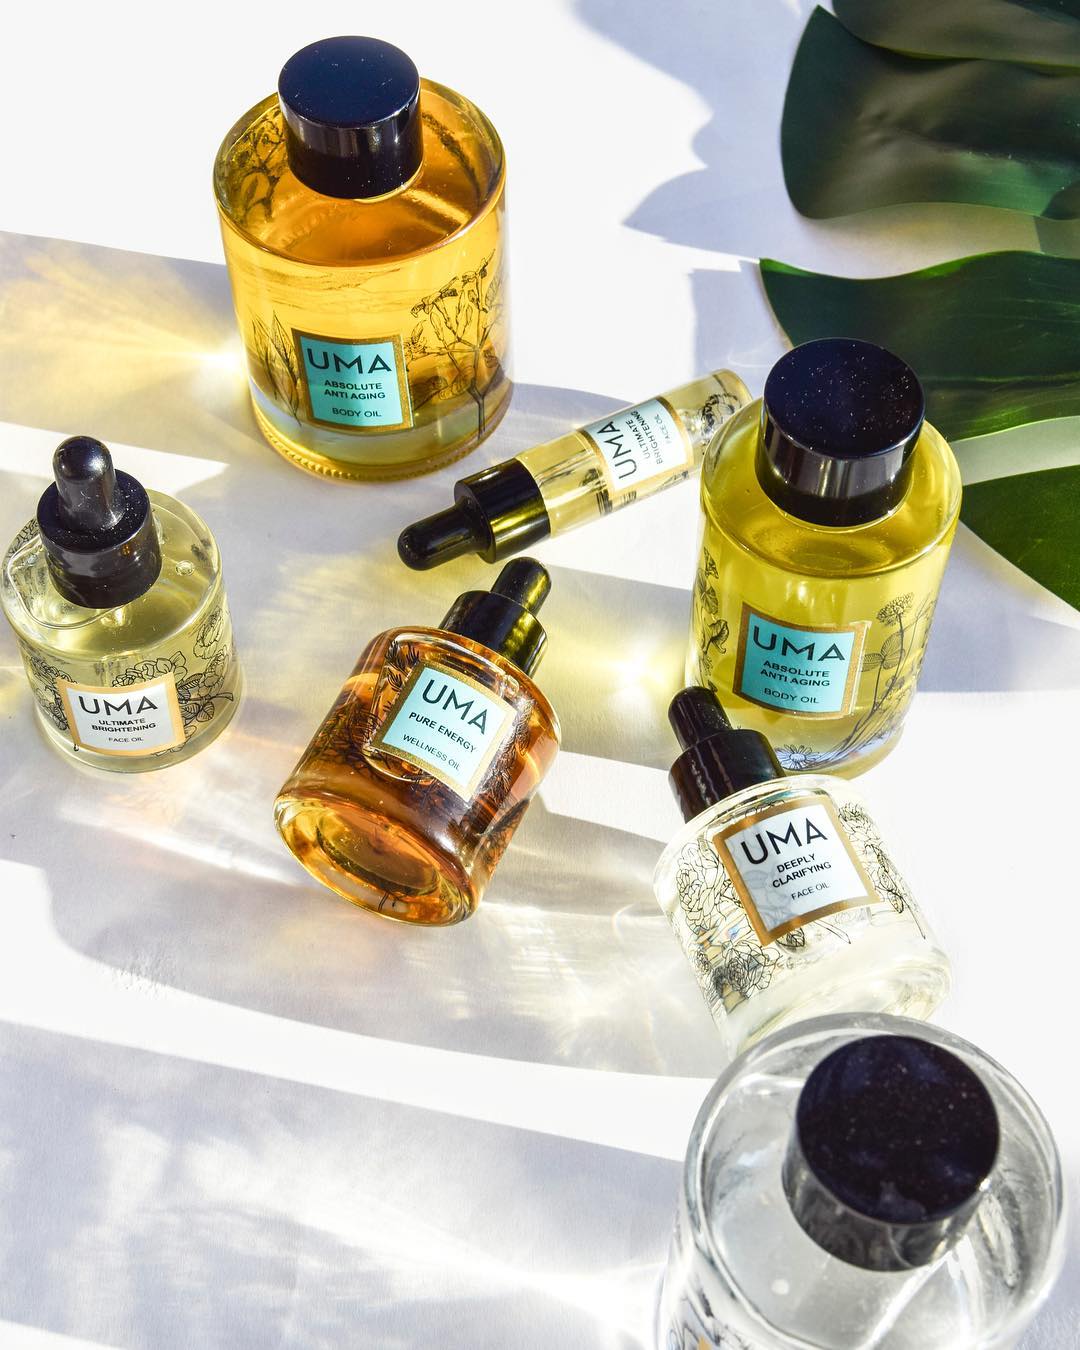 Uma Oils' collection of exquisite wellness oils